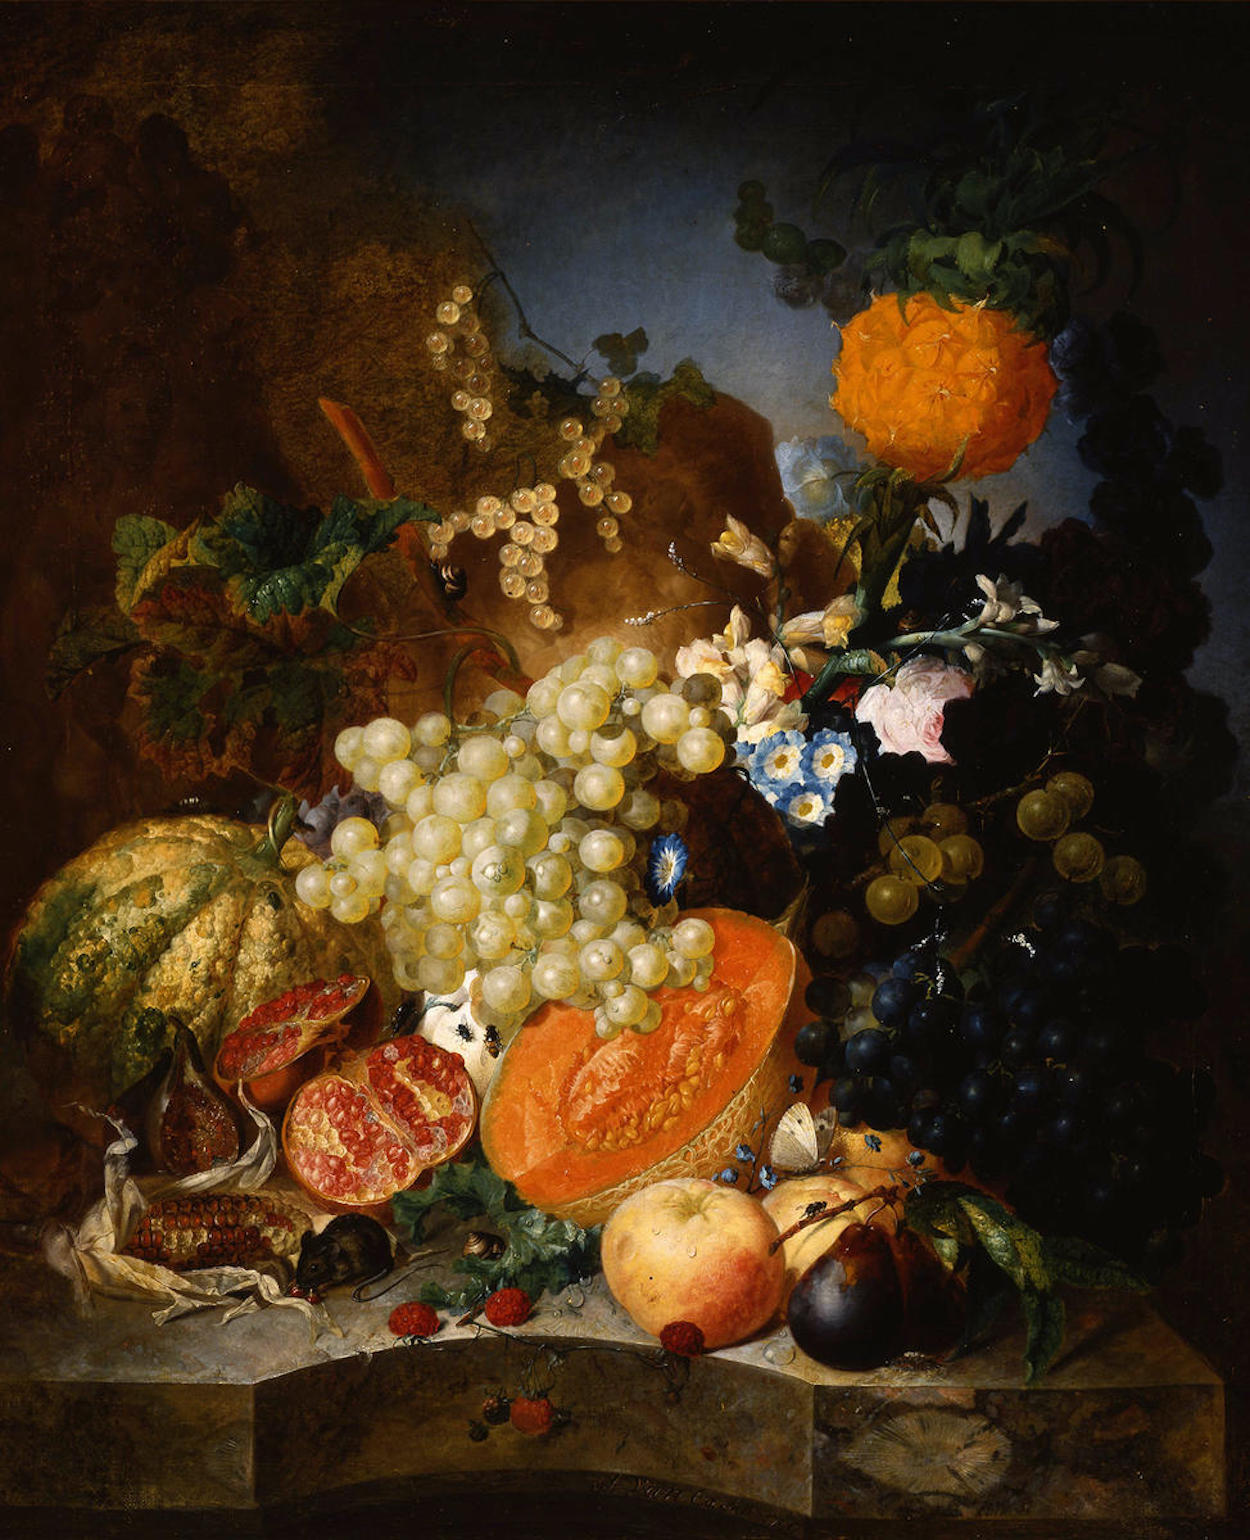 水果靜物 by Jan van Os - 1769 年 - 69.9 x 57.8 釐米 